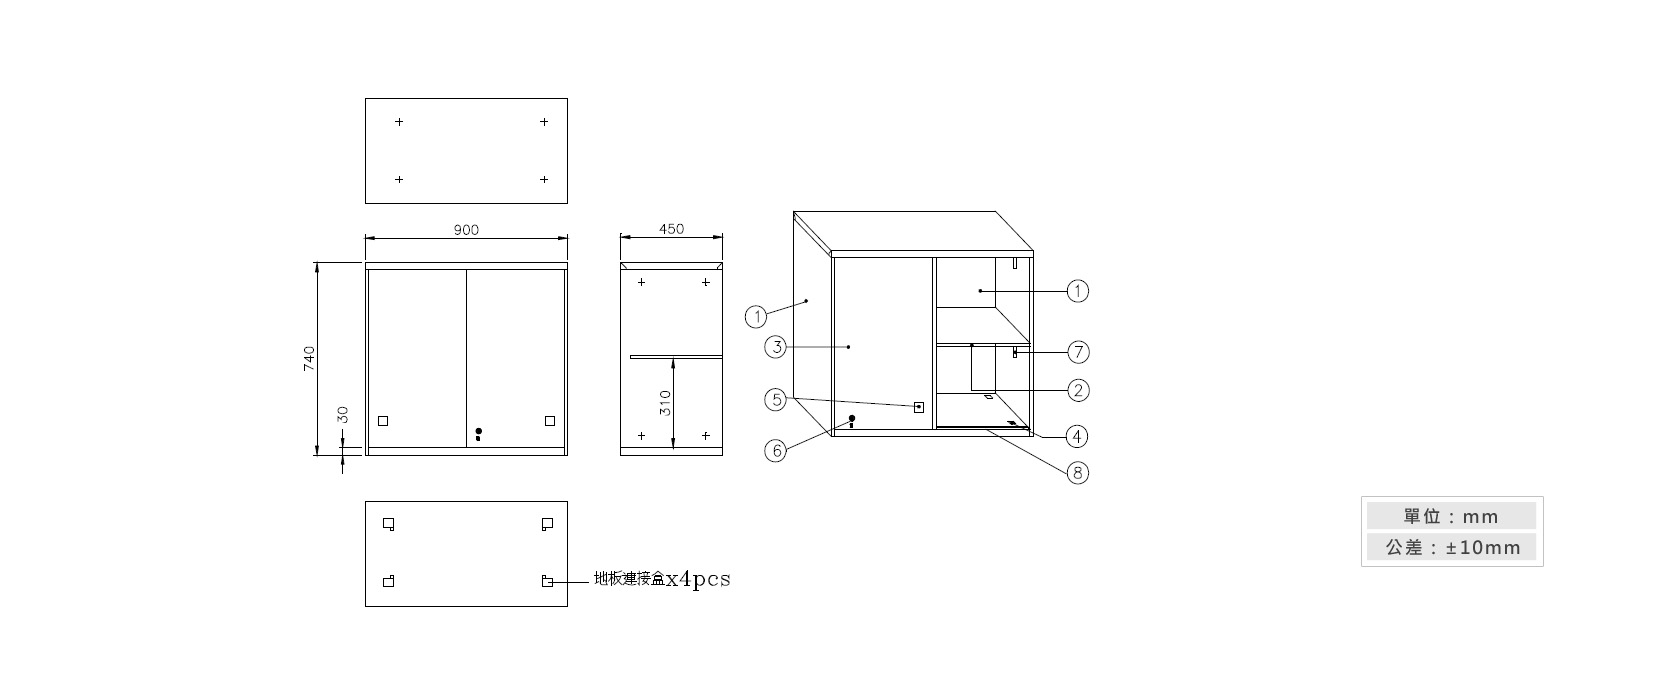 3-13 鐵拉門上置式鋼製公文櫃材質說明